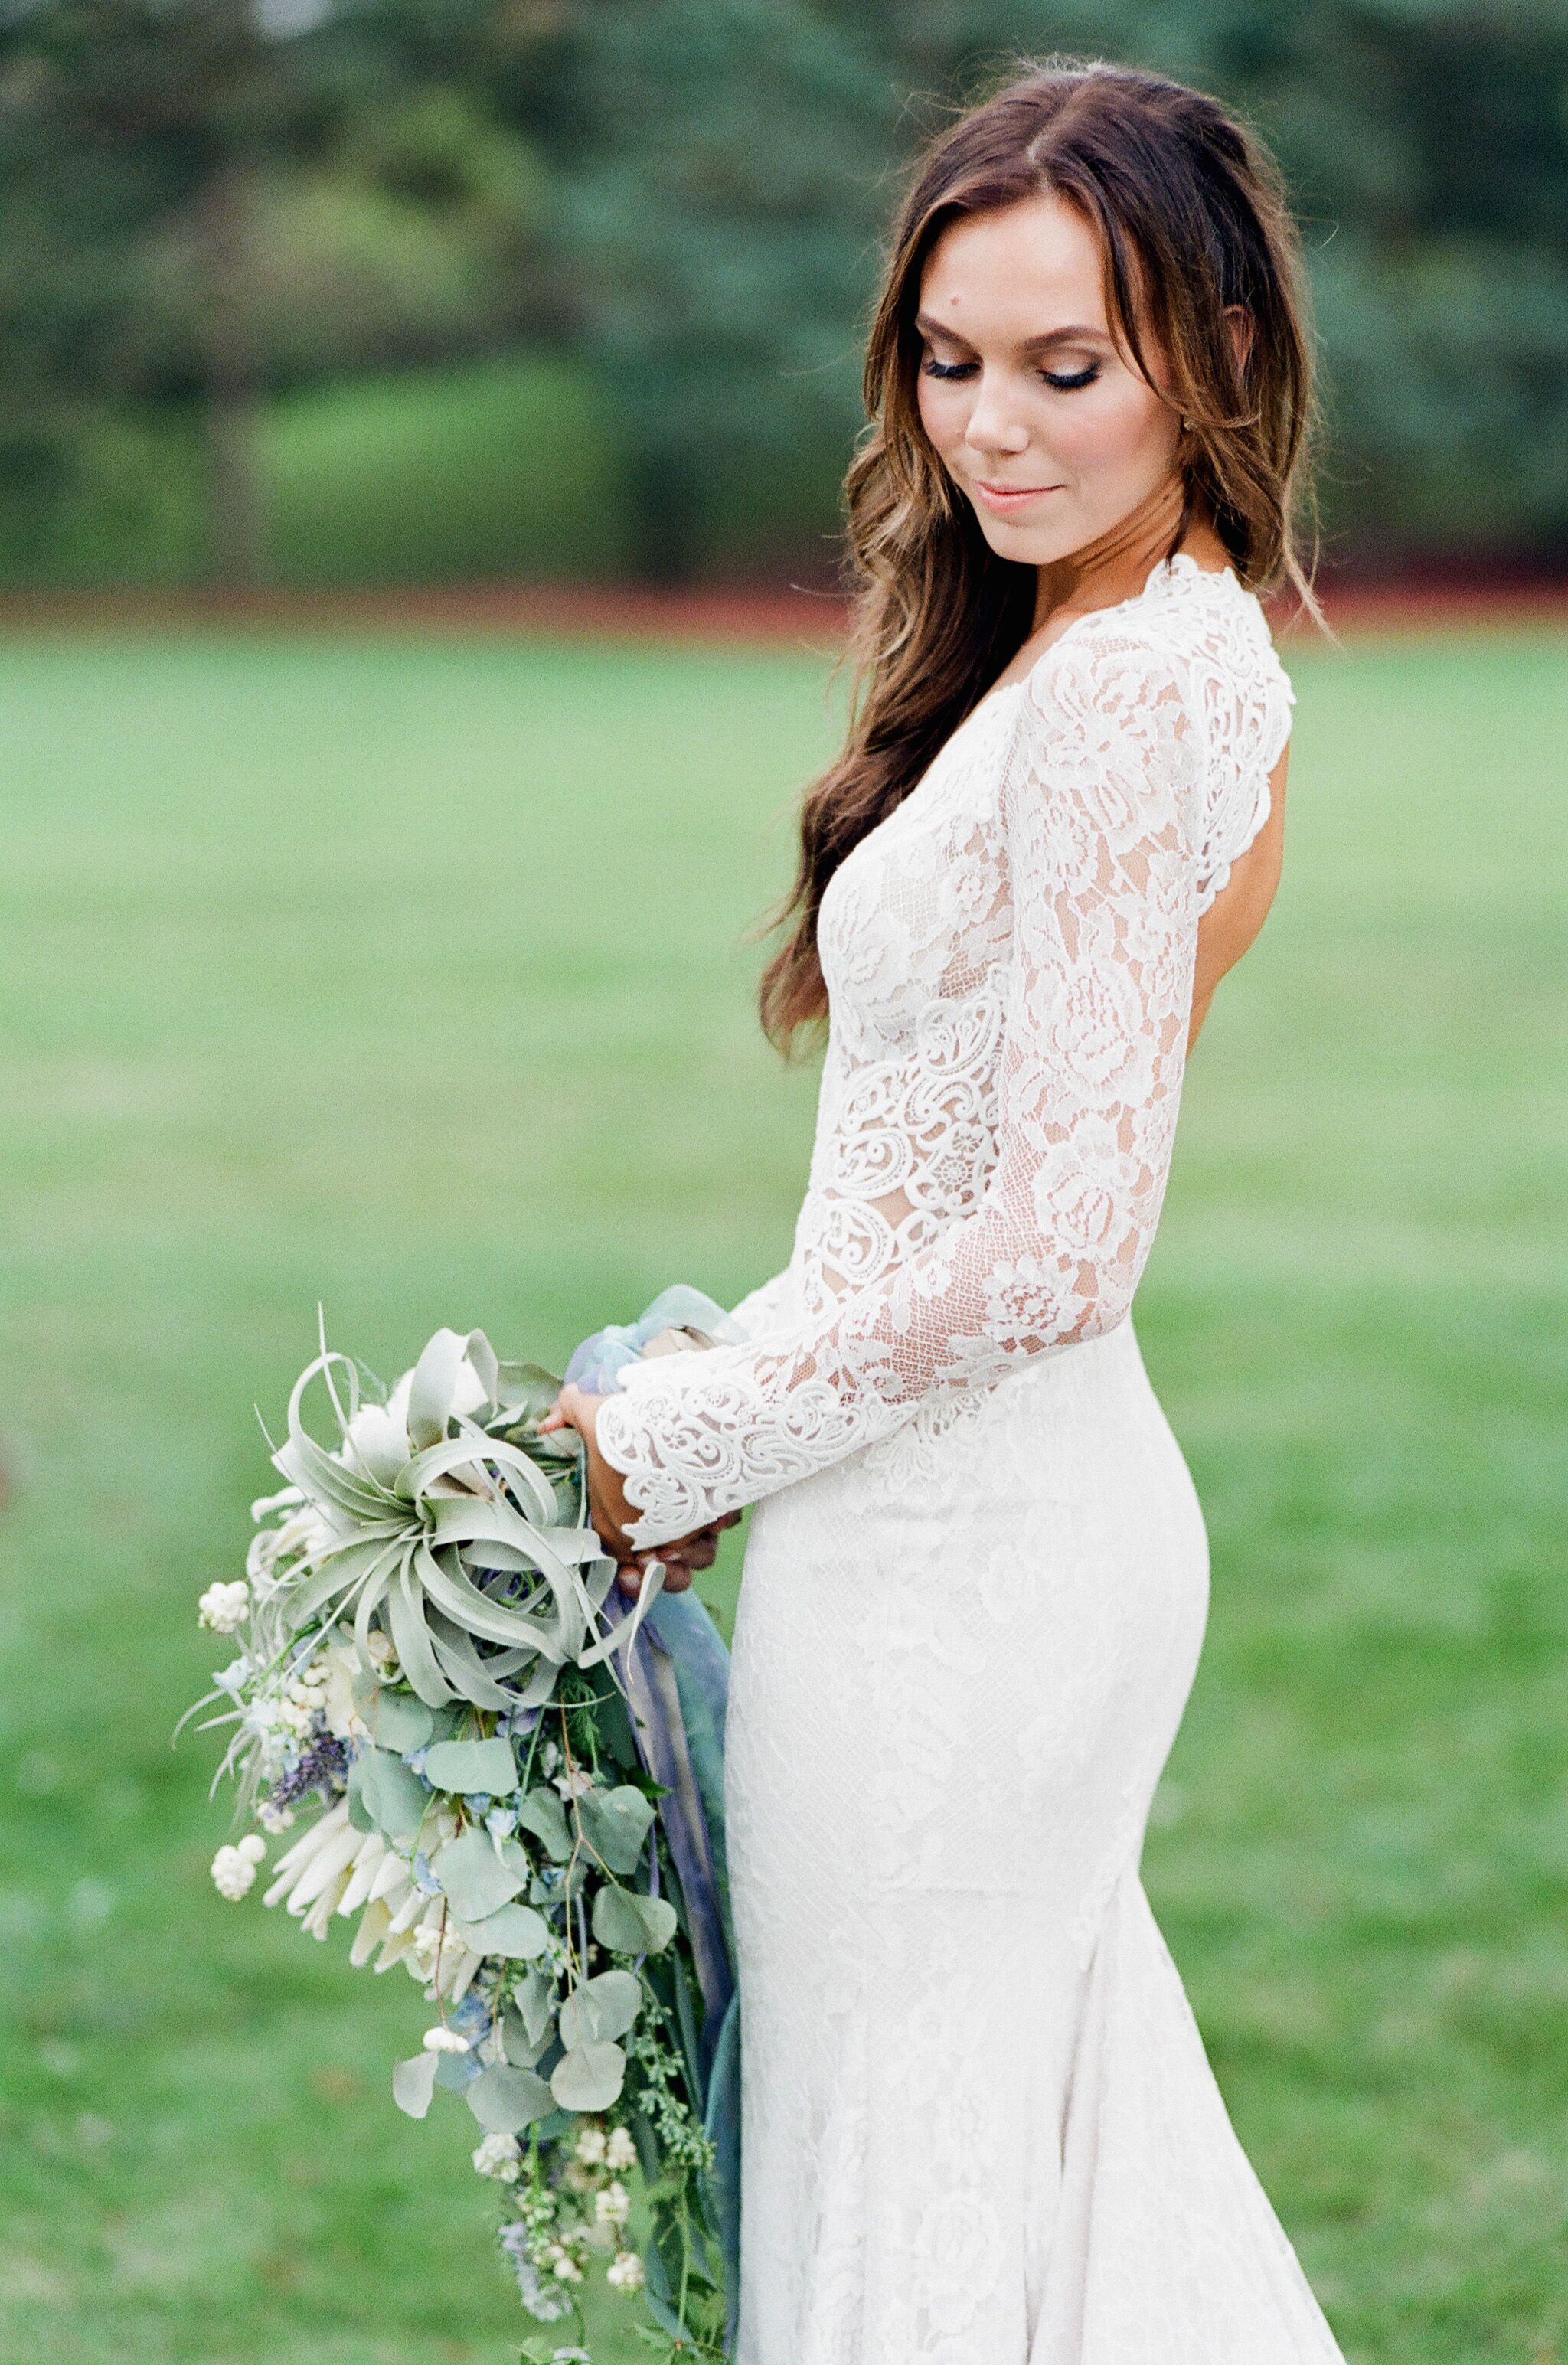 White Lace Long Sleeve Wedding Dress